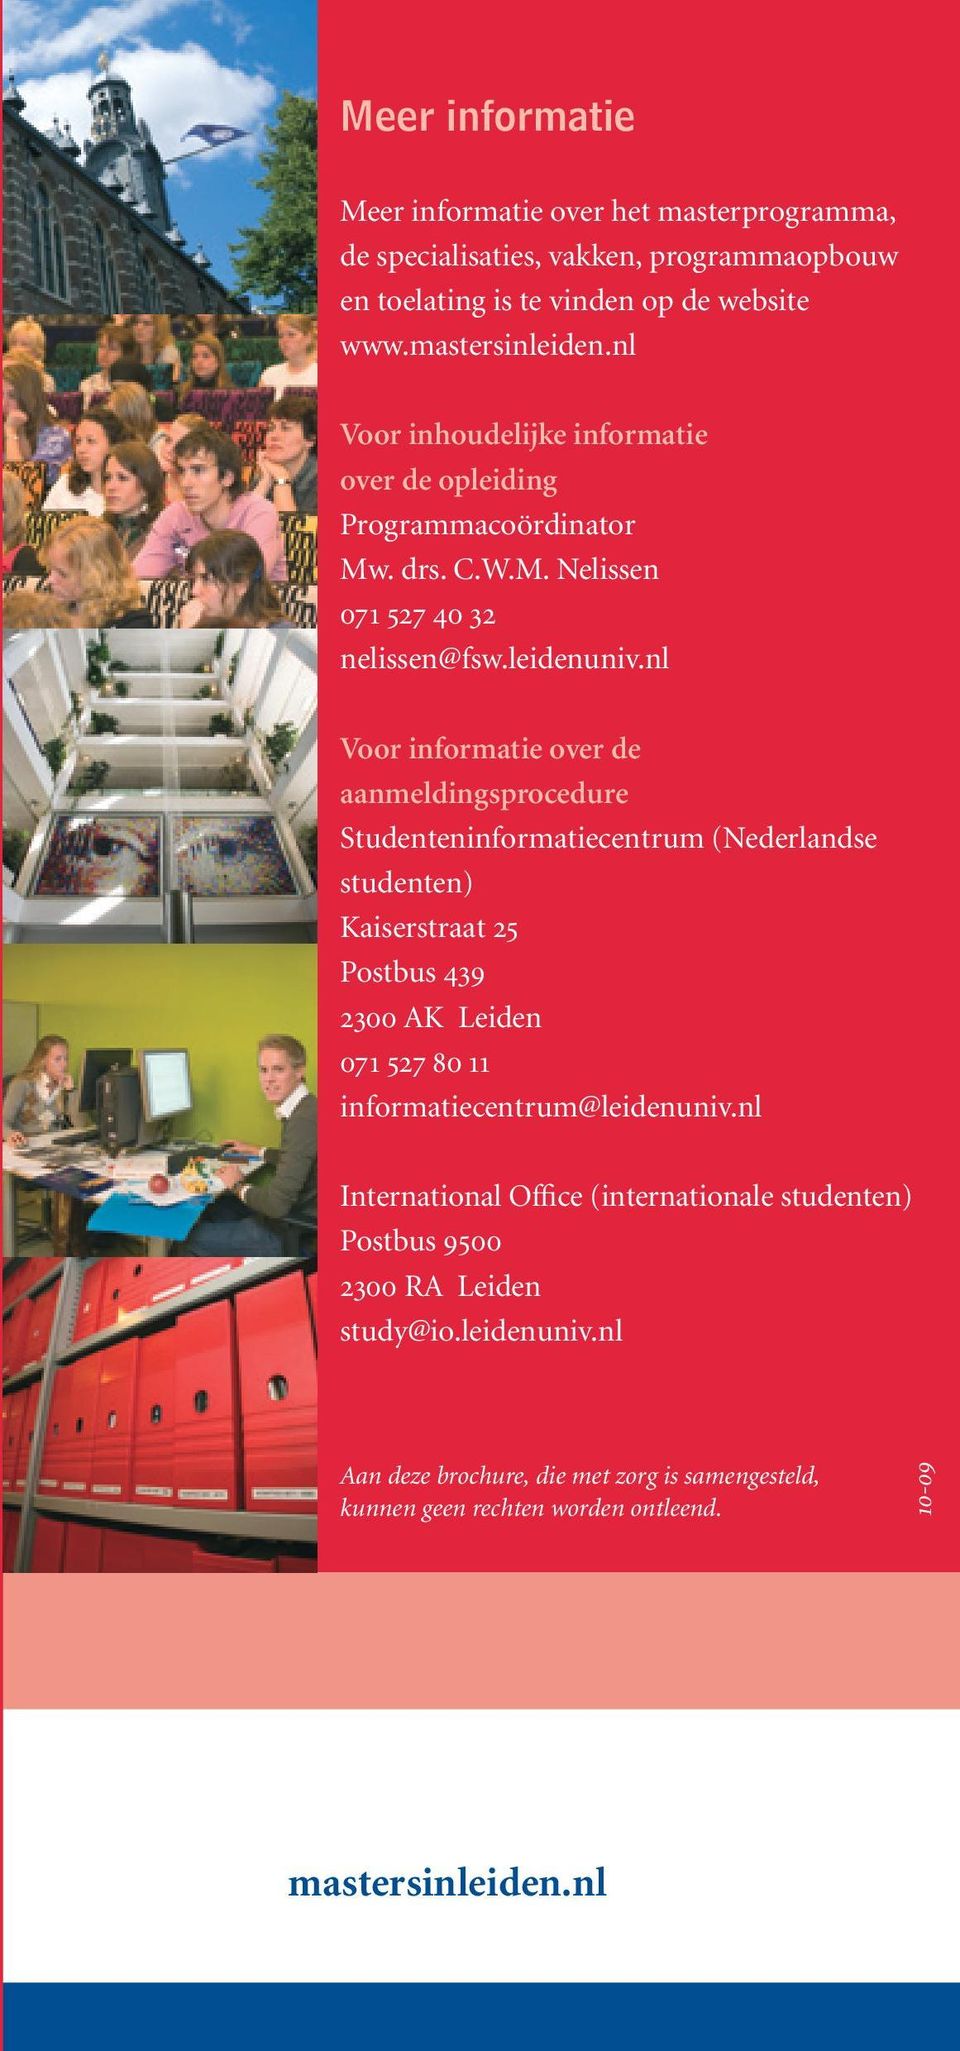 nl Voor informatie over de aanmeldingsprocedure Studenteninformatiecentrum (Nederlandse studenten) Kaiserstraat 25 Postbus 439 2300 AK Leiden 071 527 80 11